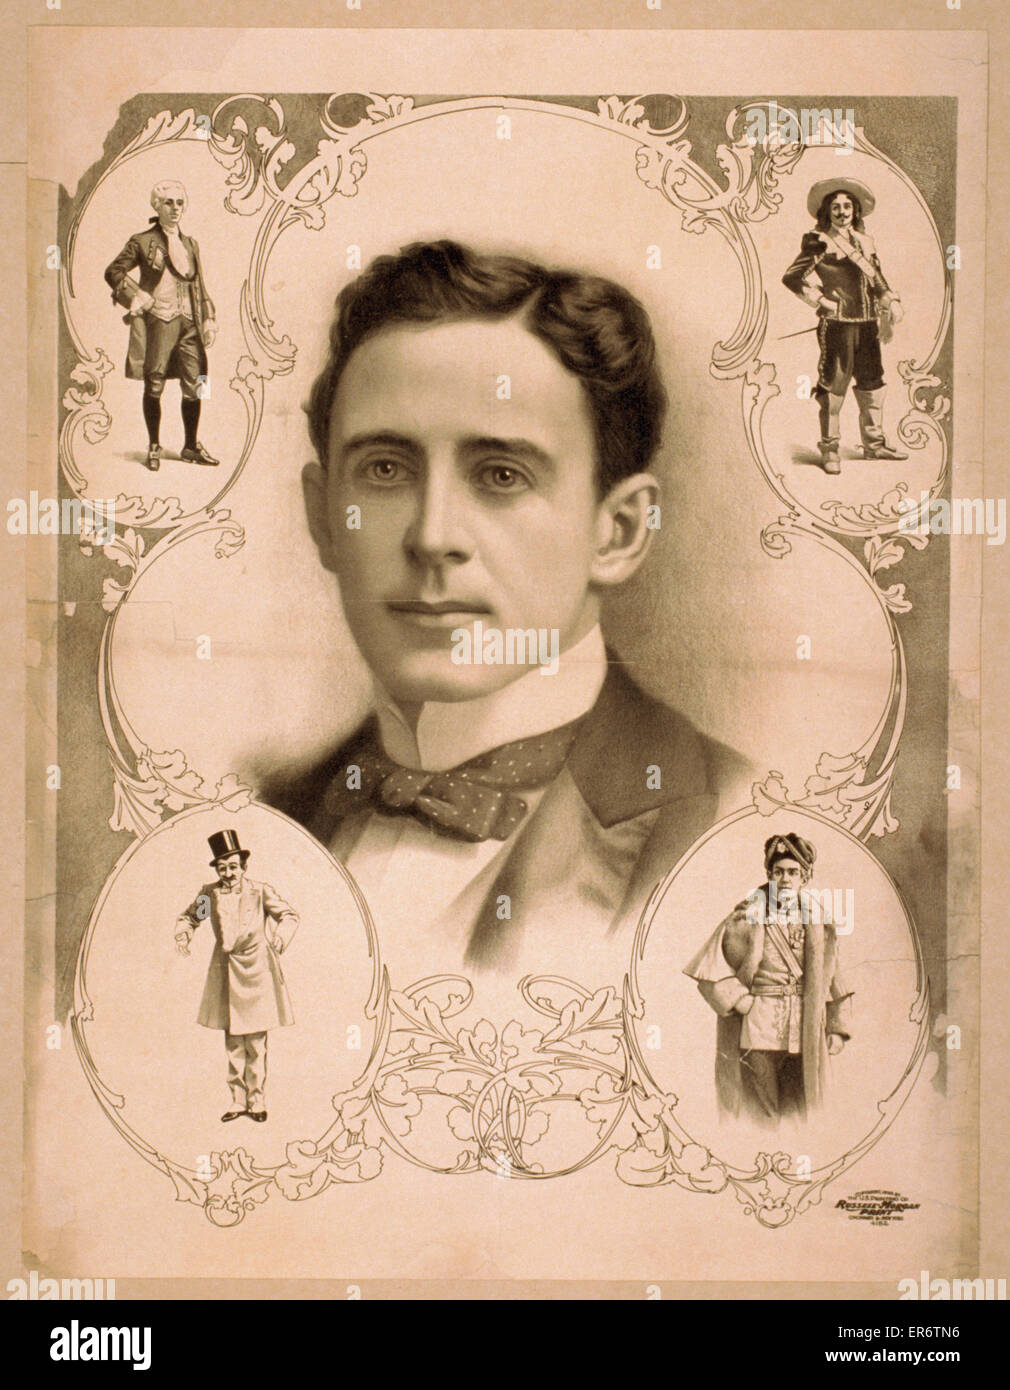 Image de buste de l'homme en noeud papillon entouré de quatre images de sam Banque D'Images